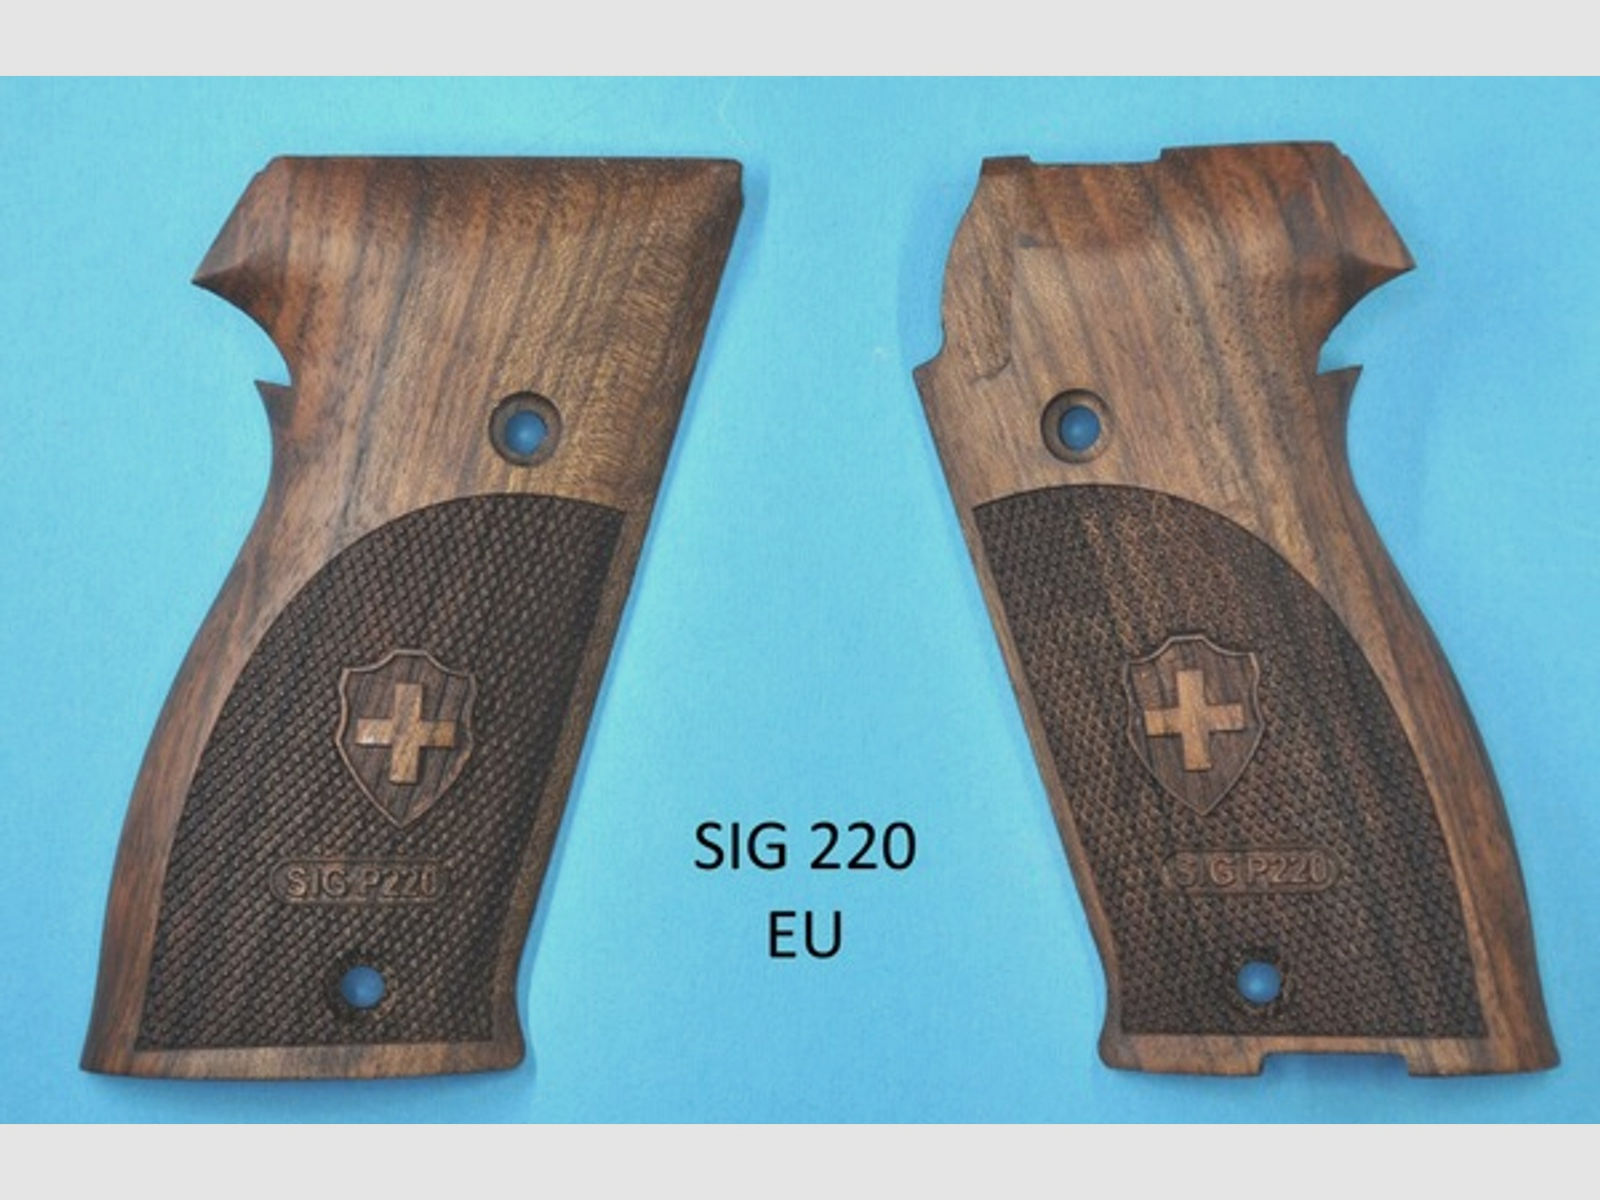 Nussbaum-Griffschalen für Pistole SIG SAUER P220 EU-Modell